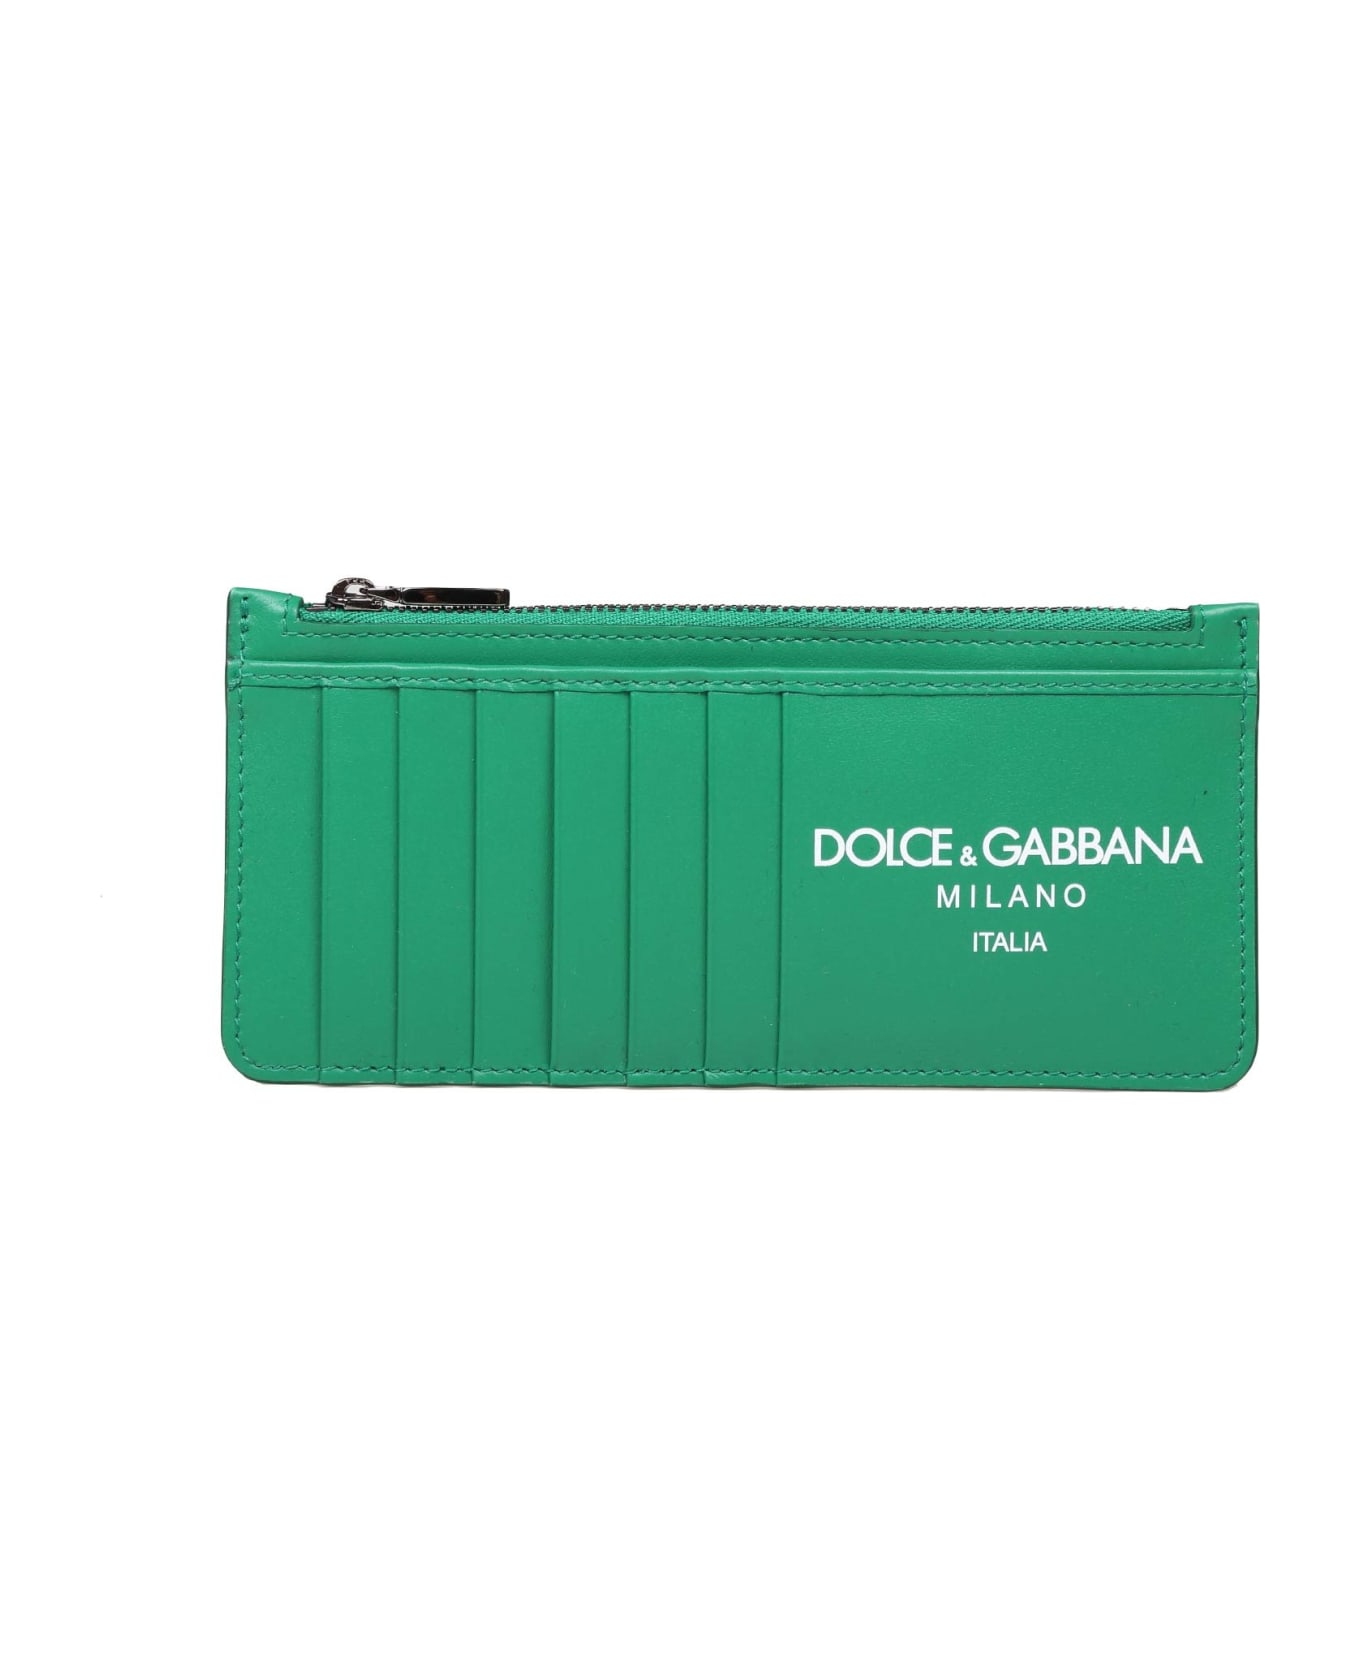 Dolce & Gabbana Calfskin Card Holder With Green Logo - EMERALD